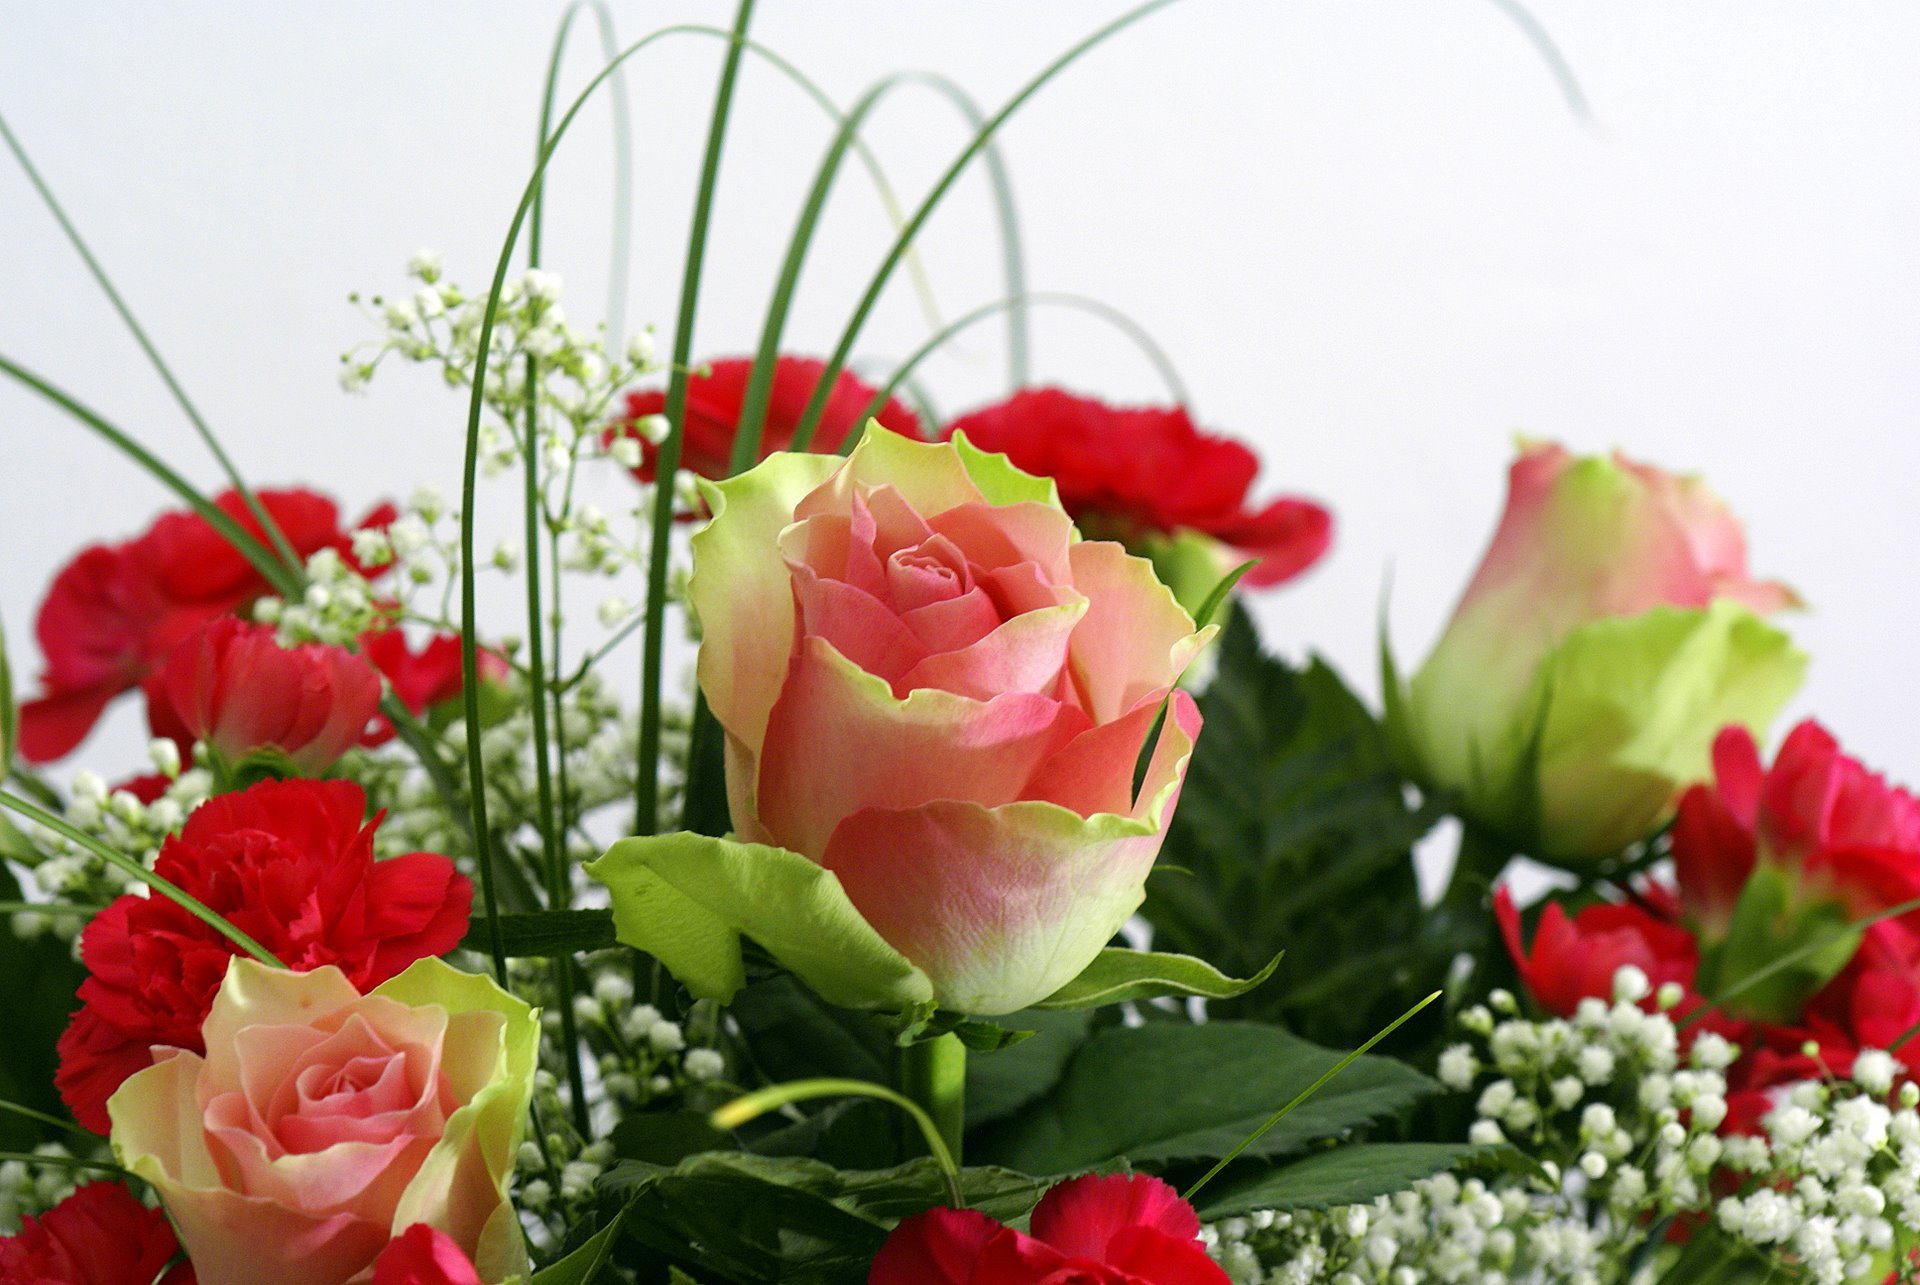 Поздравляю с праздником открытка красивая. Поздравляю! (Цветок). Открытка цветы. С днем рождения цветы. Поздравление цветы для женщины.